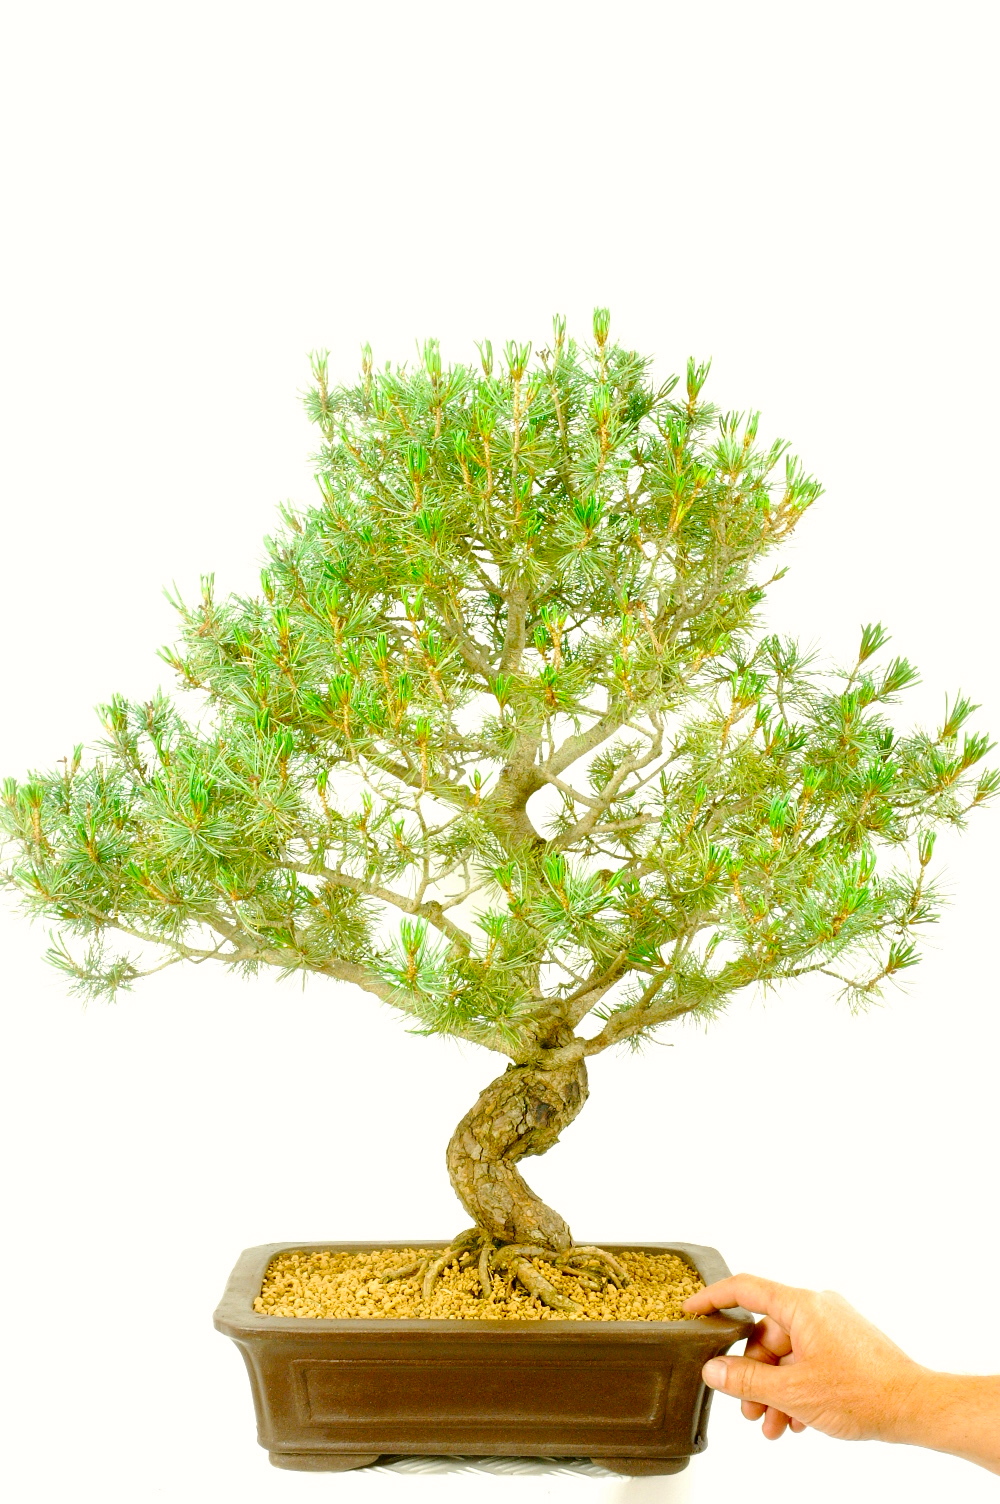 Japanese White Pine Bonsai Offer Bonsai Trees For Sale Uk